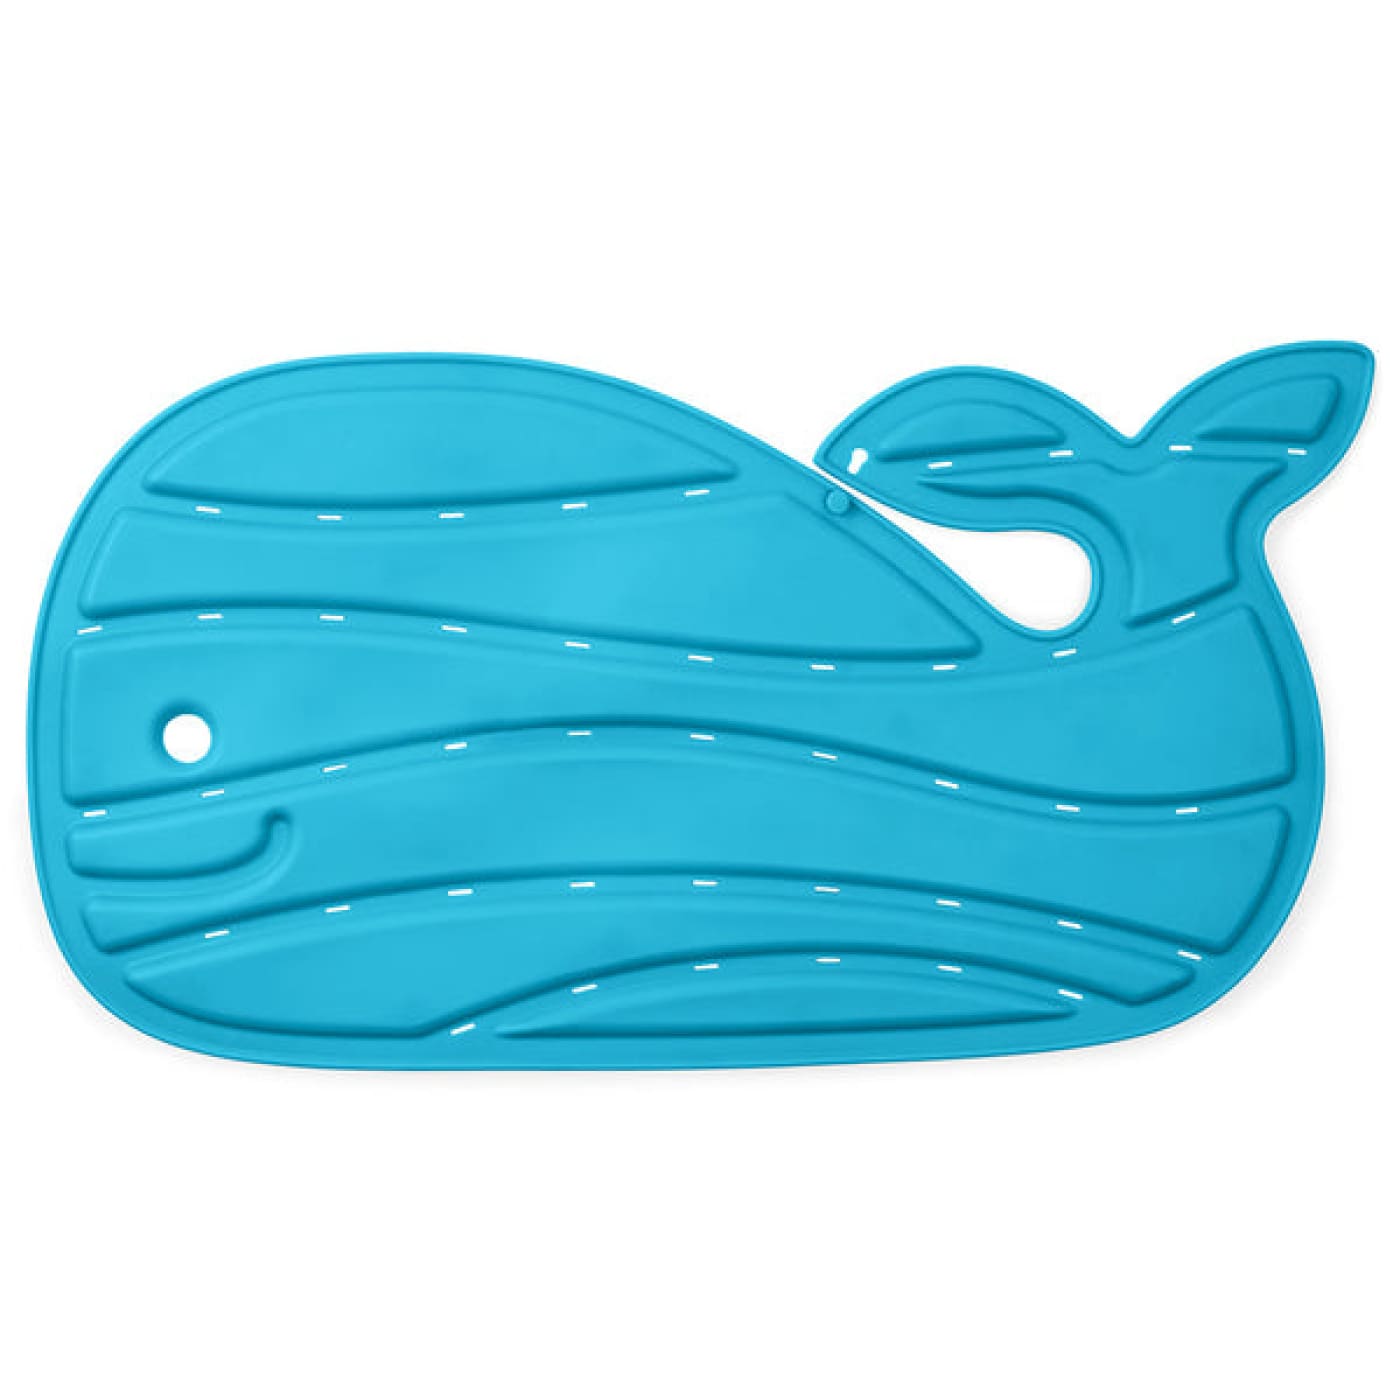 Skip Hop Moby Bath Mat - Blue - BATHTIME & CHANGING - BATH TOYS/AIDS